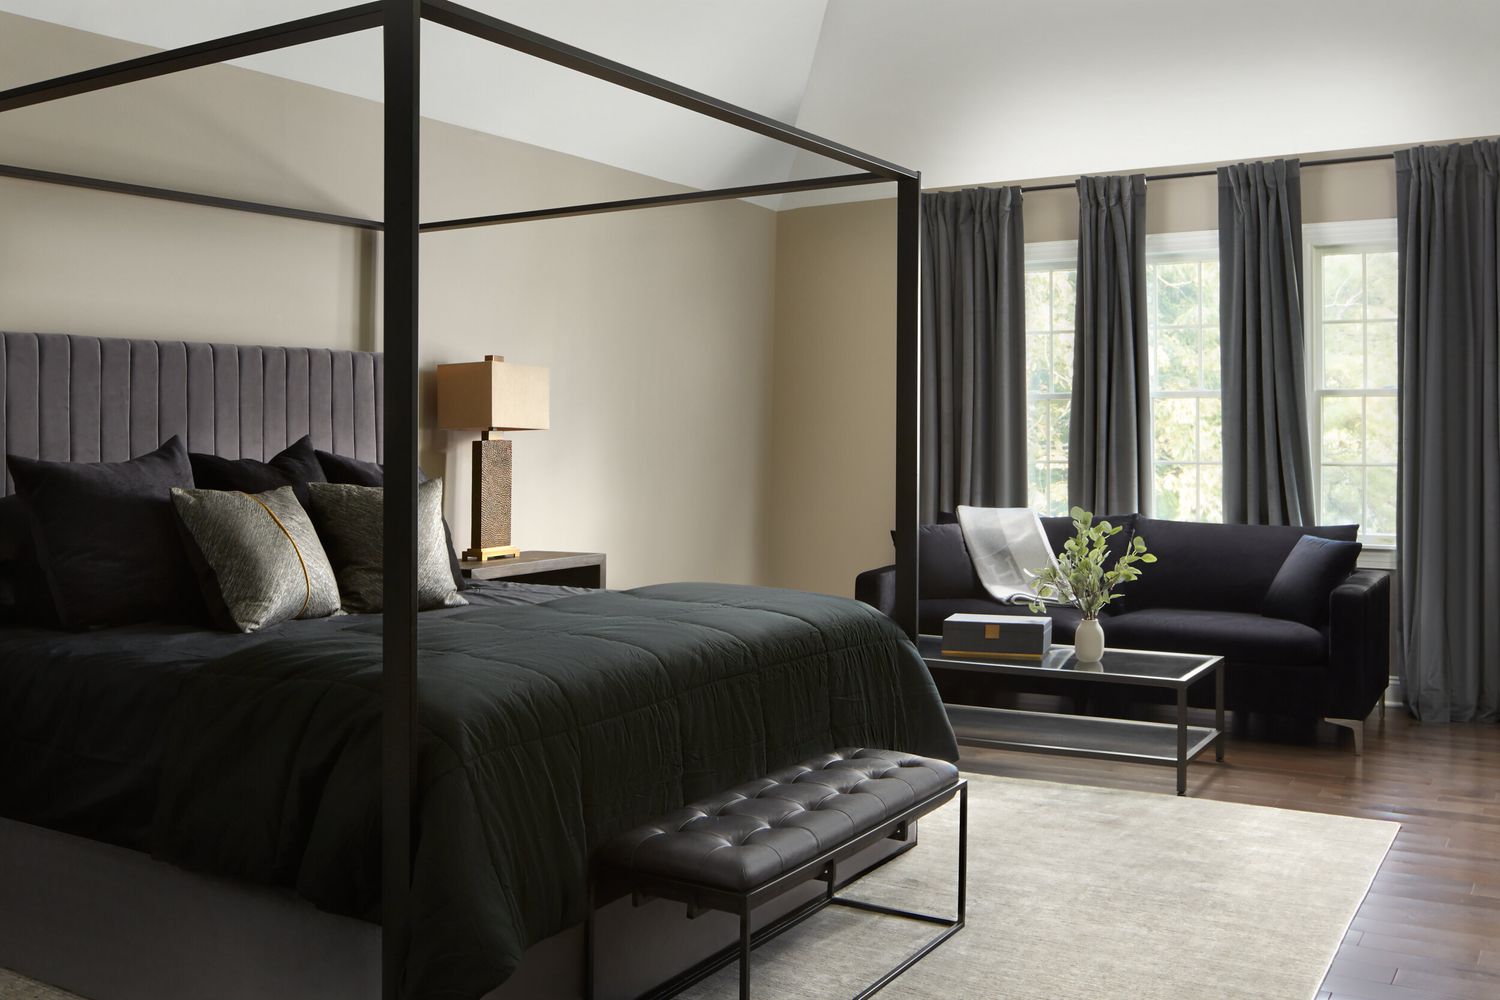 dormitorio neutro con ropa de cama y marco negros, cabecero y cortinas grises